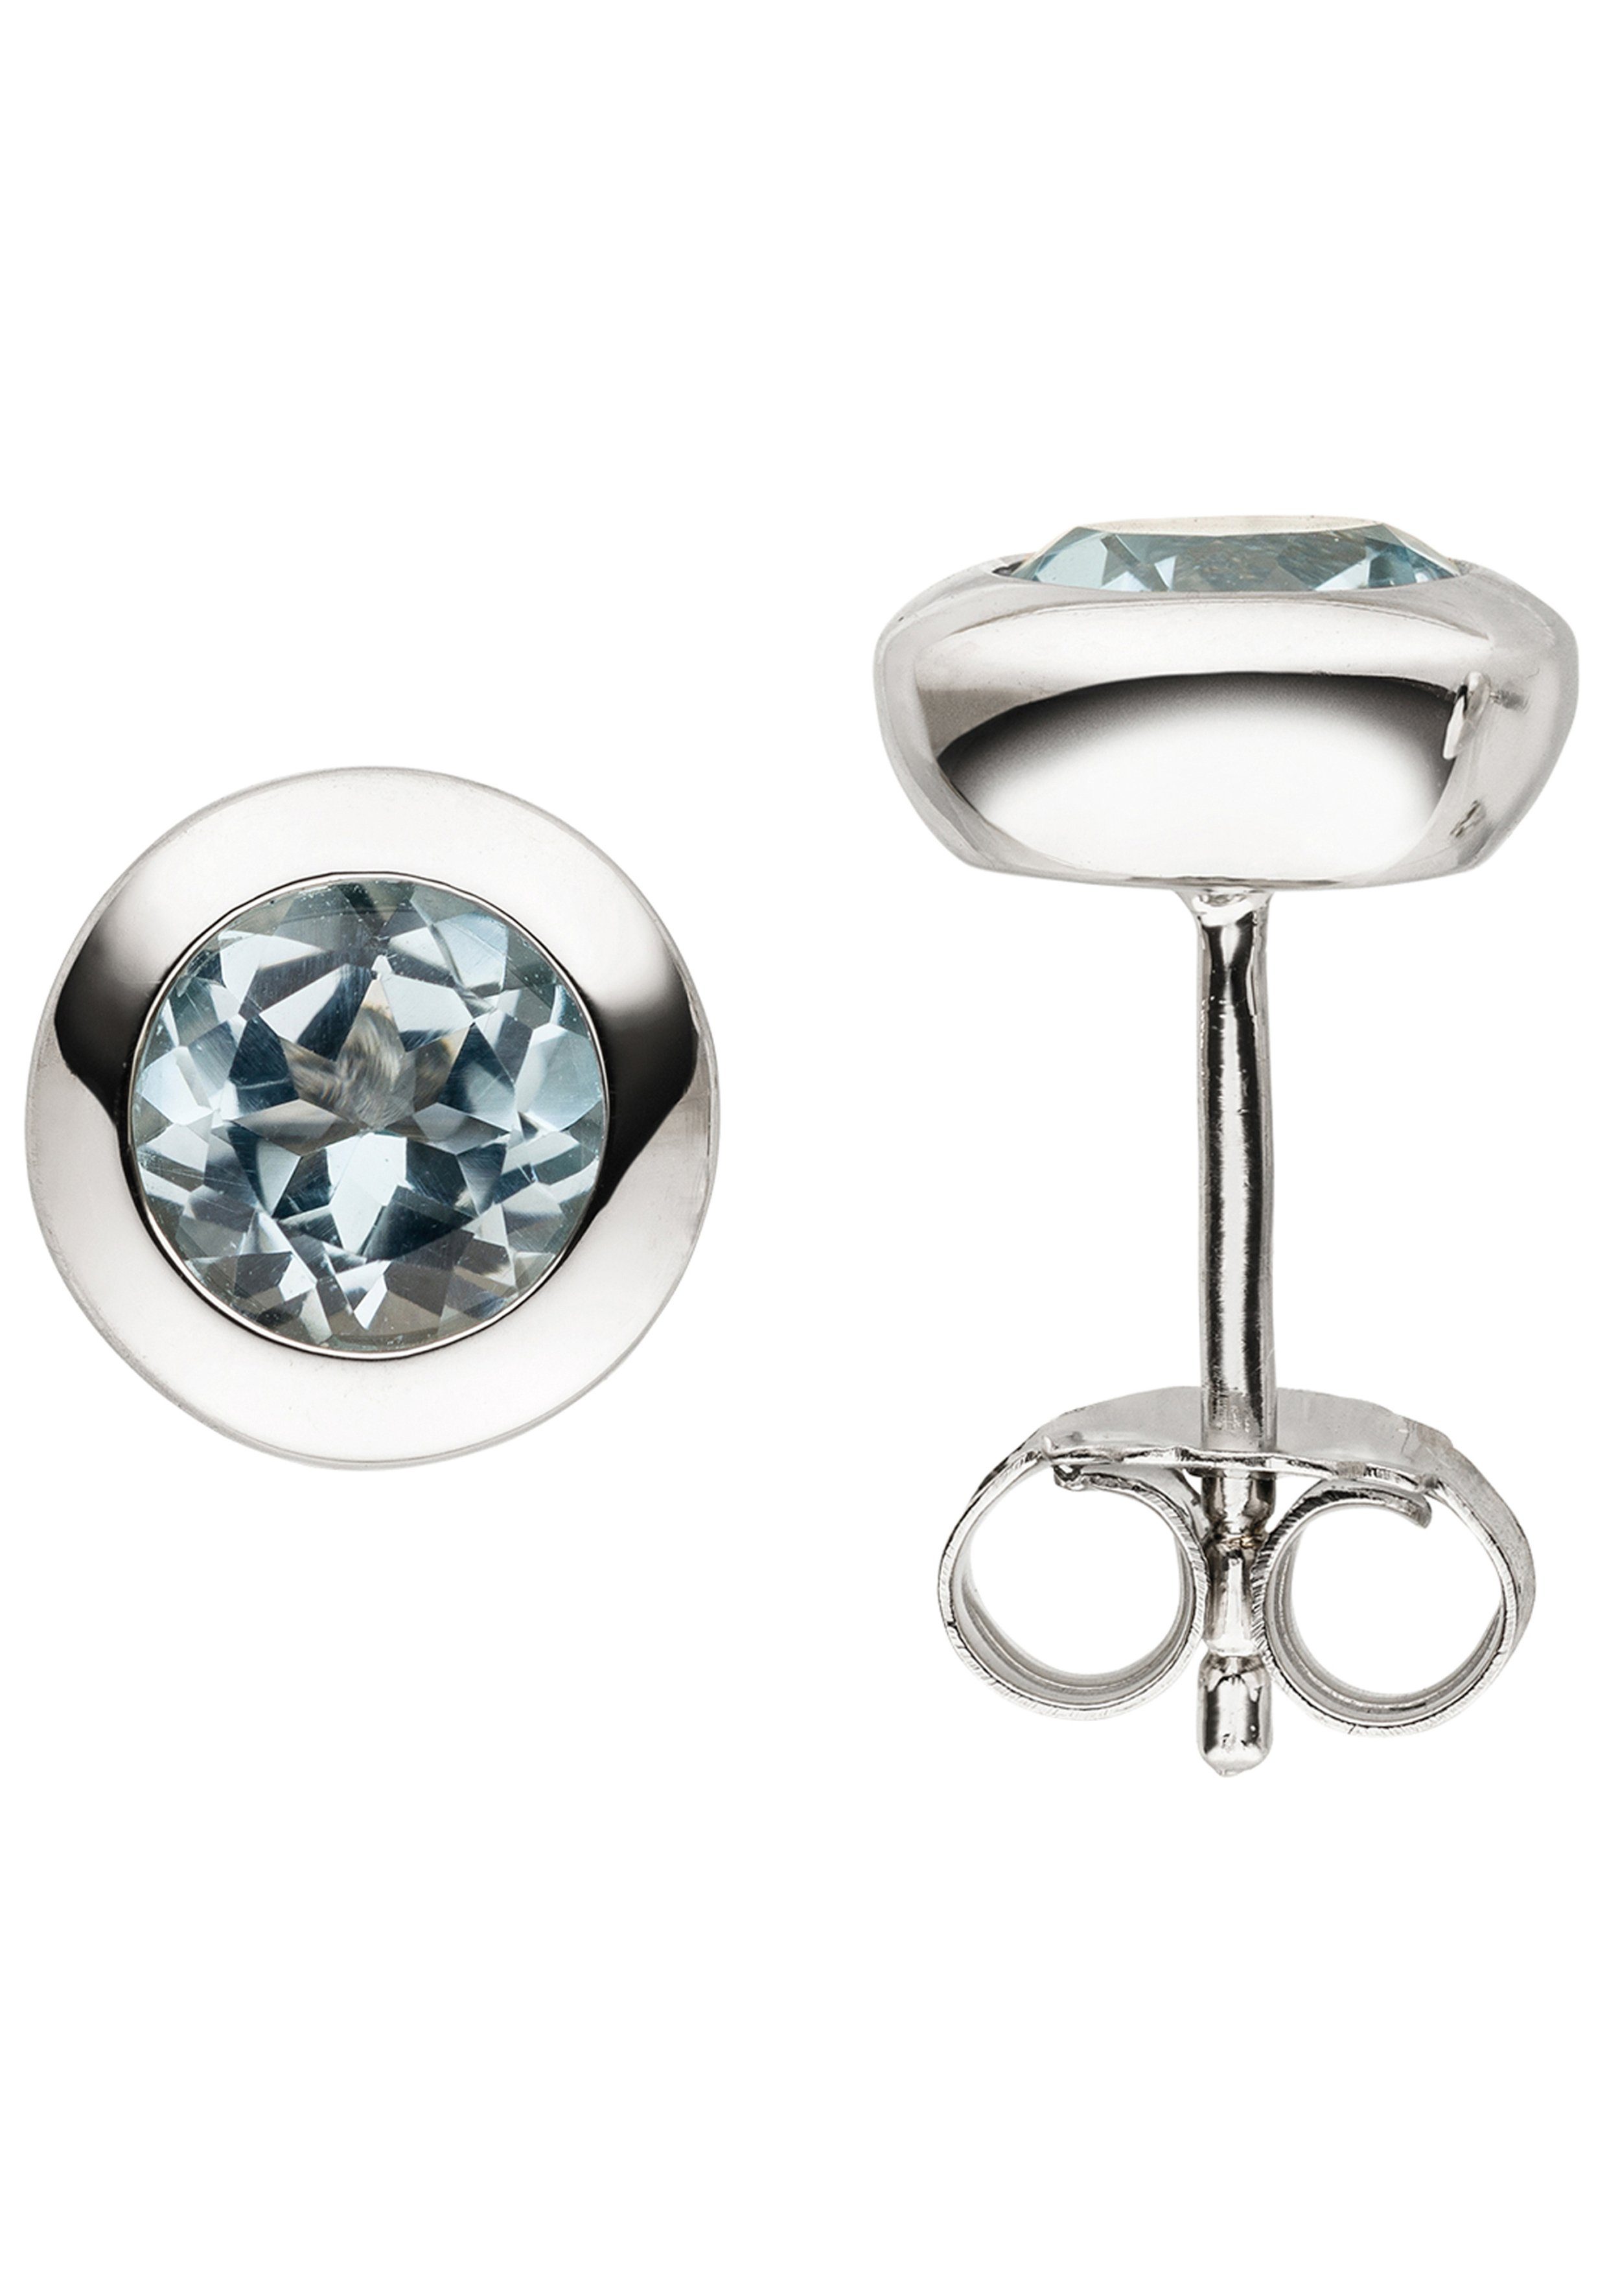 Marke der Silber Ohrstecker Juwelierqualität Paar mit JOBO 925 rund, Blautopas, JOBO